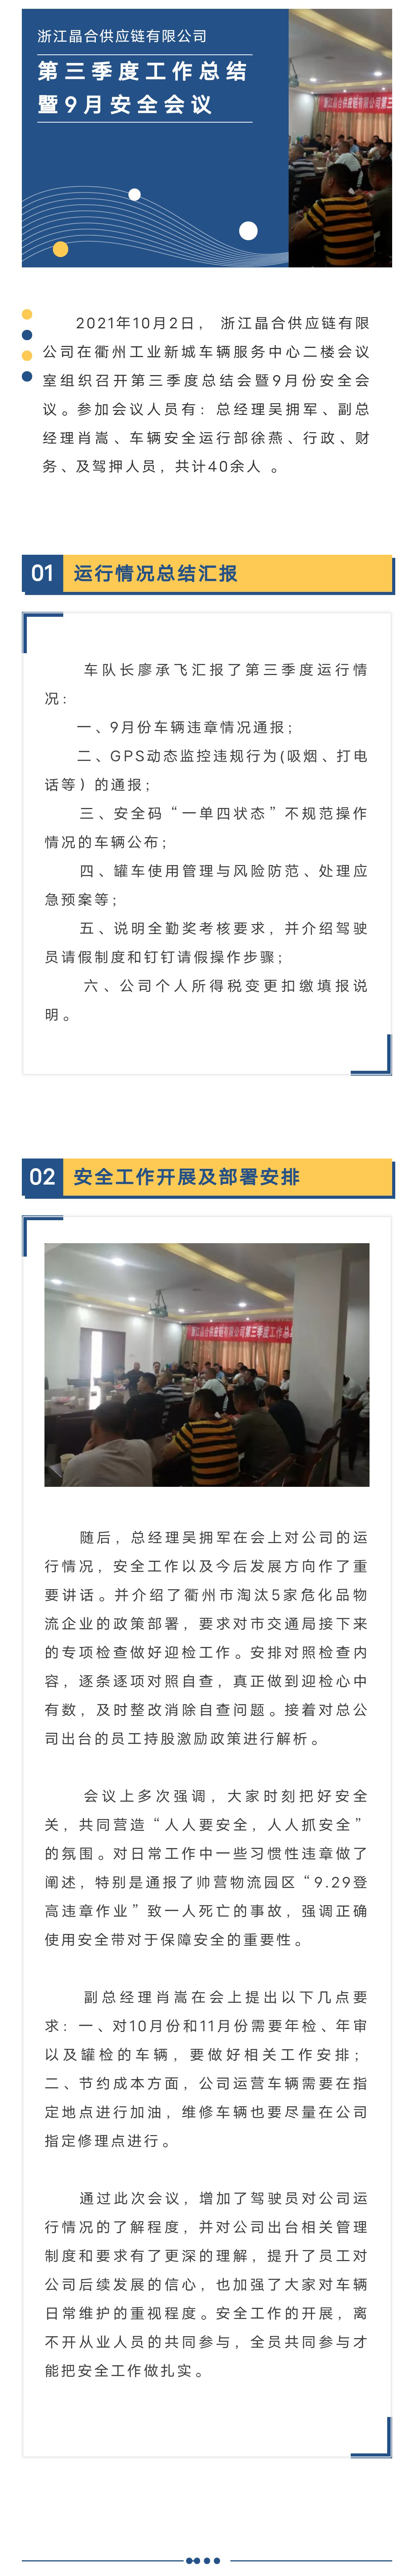 浙江晶合供應鏈有限公司召開第三季度經營總結會暨9月份安全會議